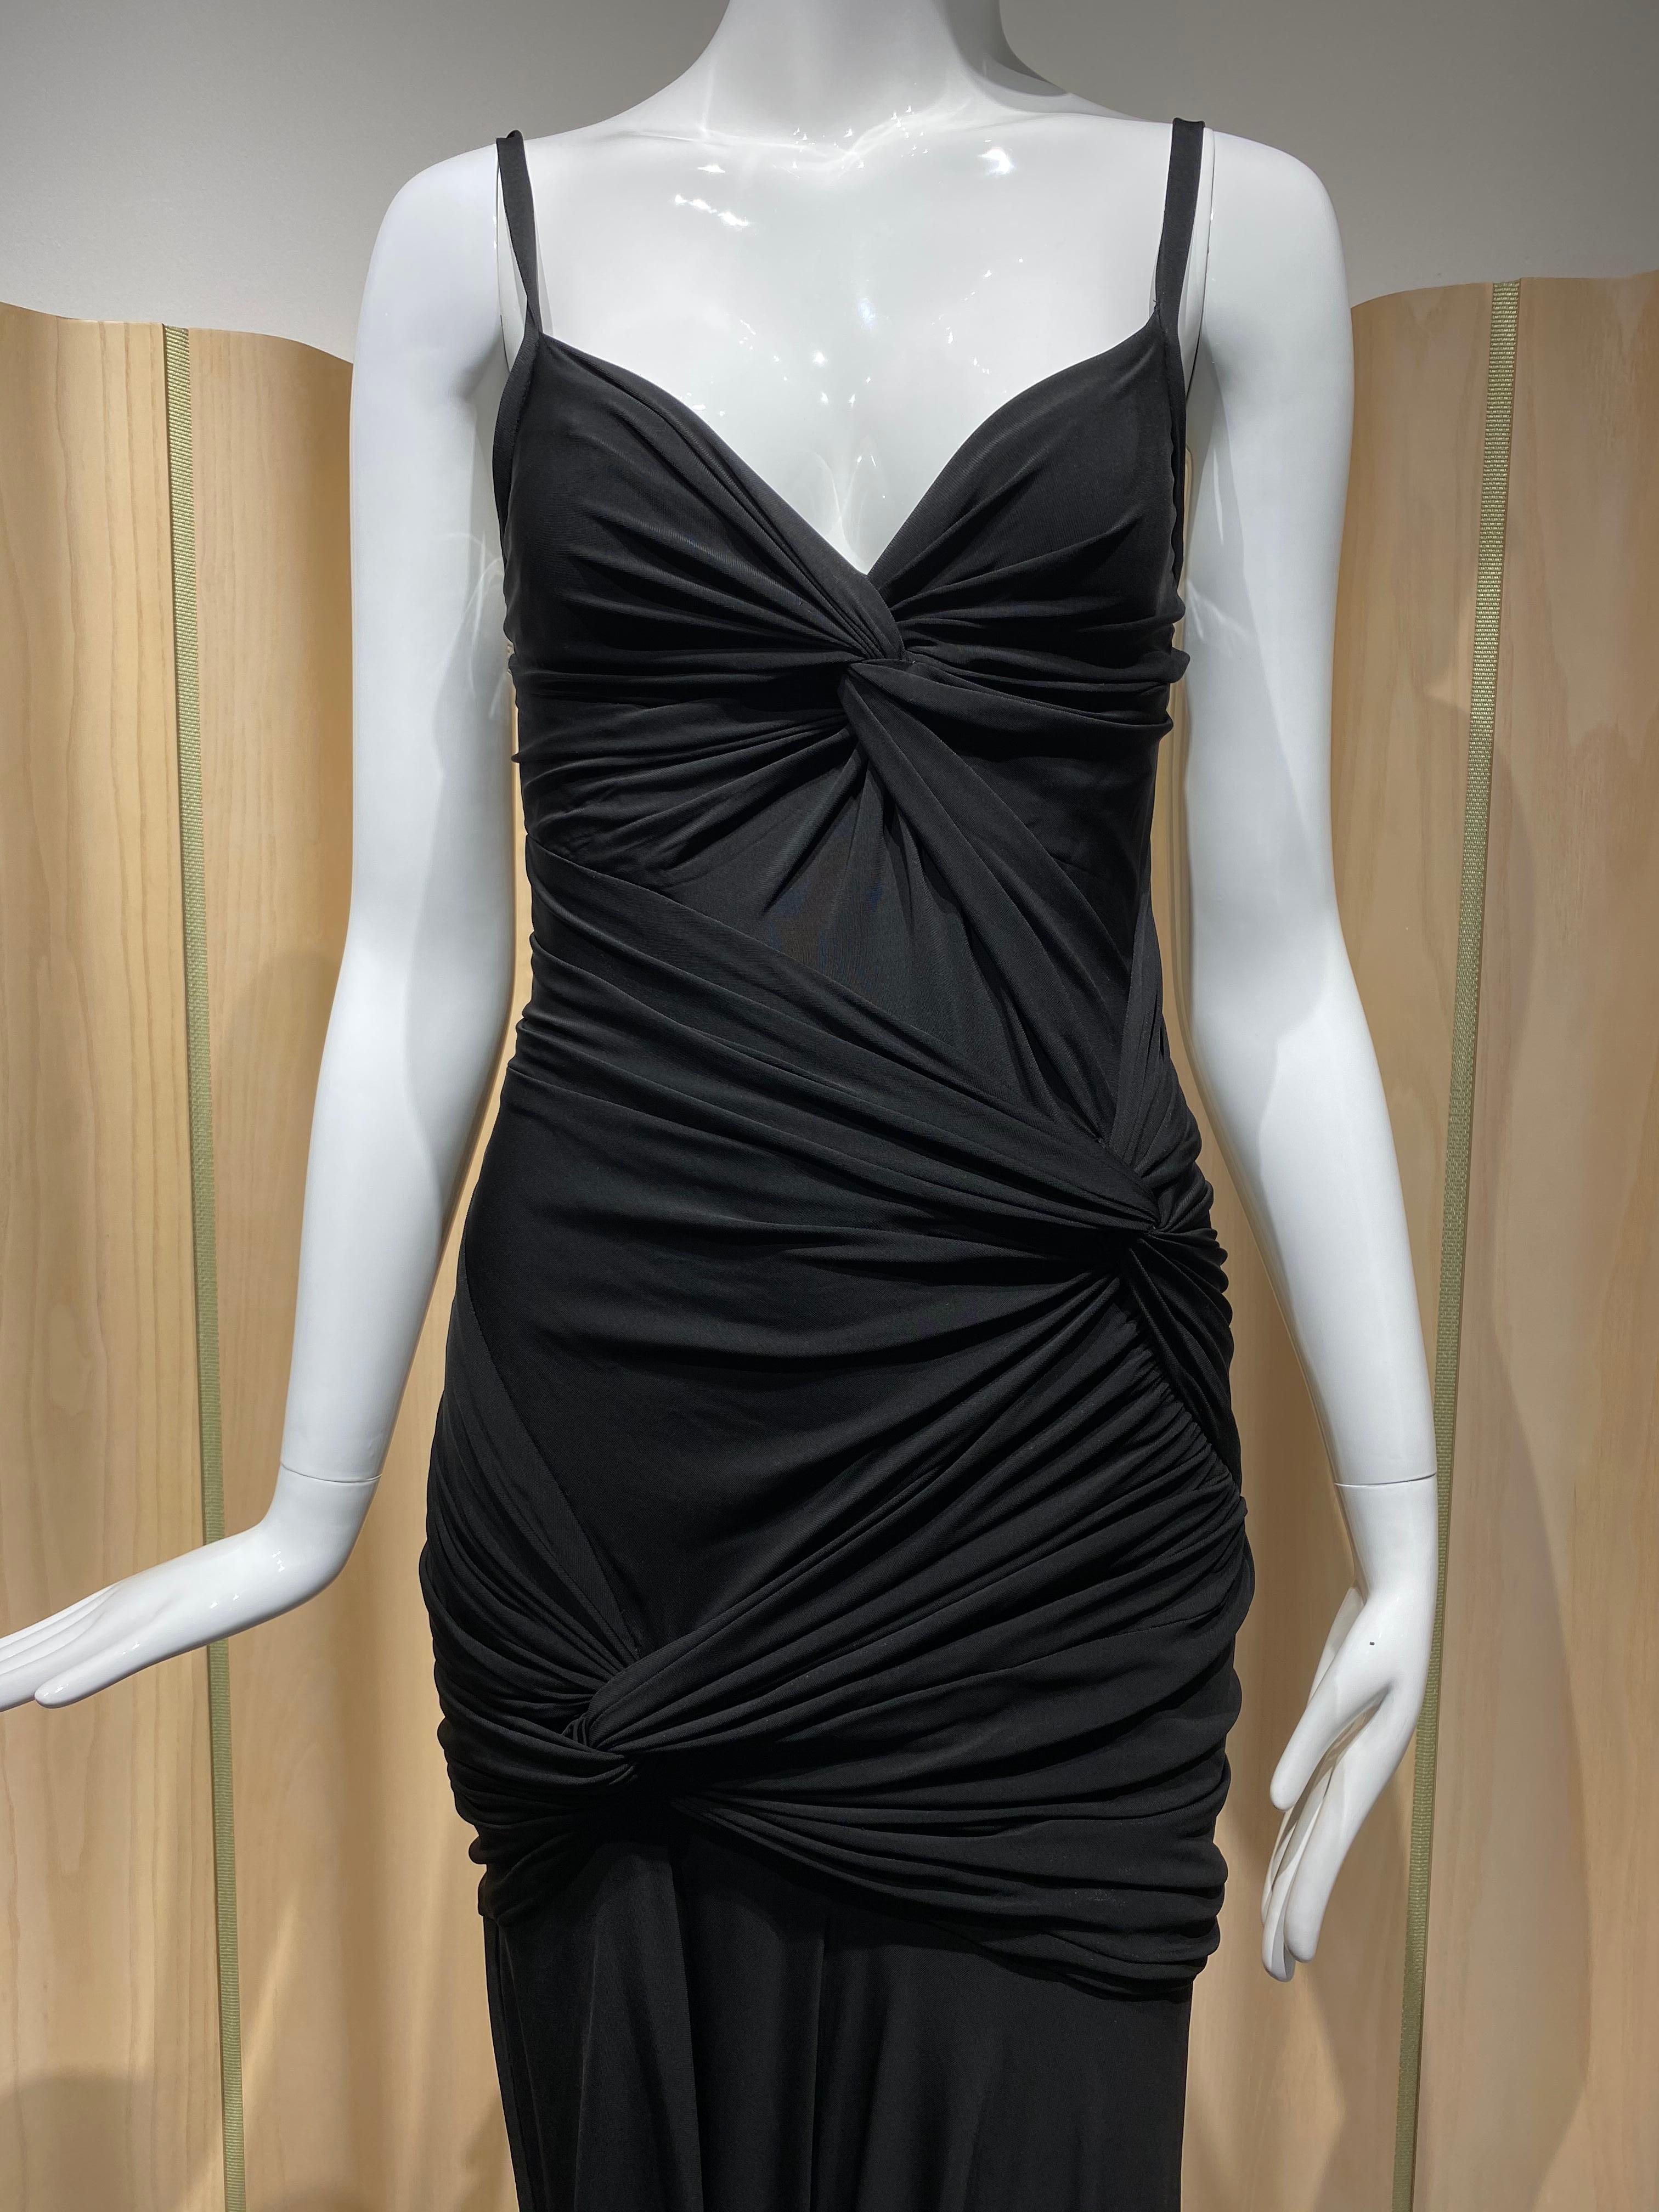 Sexy Donna Karan Black Label Jersey Spaghetti-Träger formschlüssiges Cocktail-Kleid.
Passform Größe 2/4